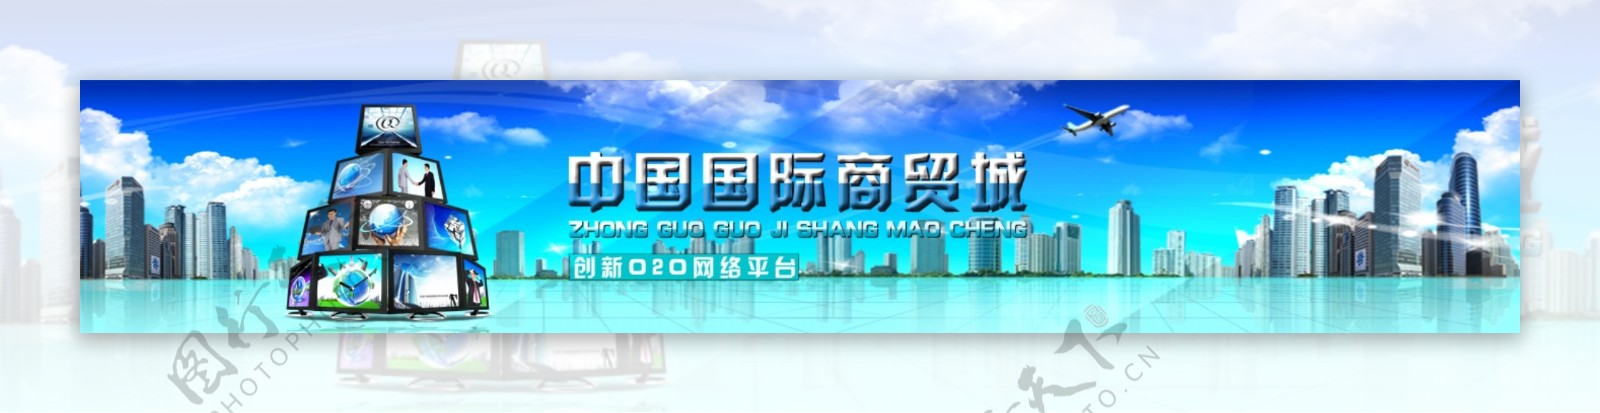 中国国际商贸城网络平台网站海报